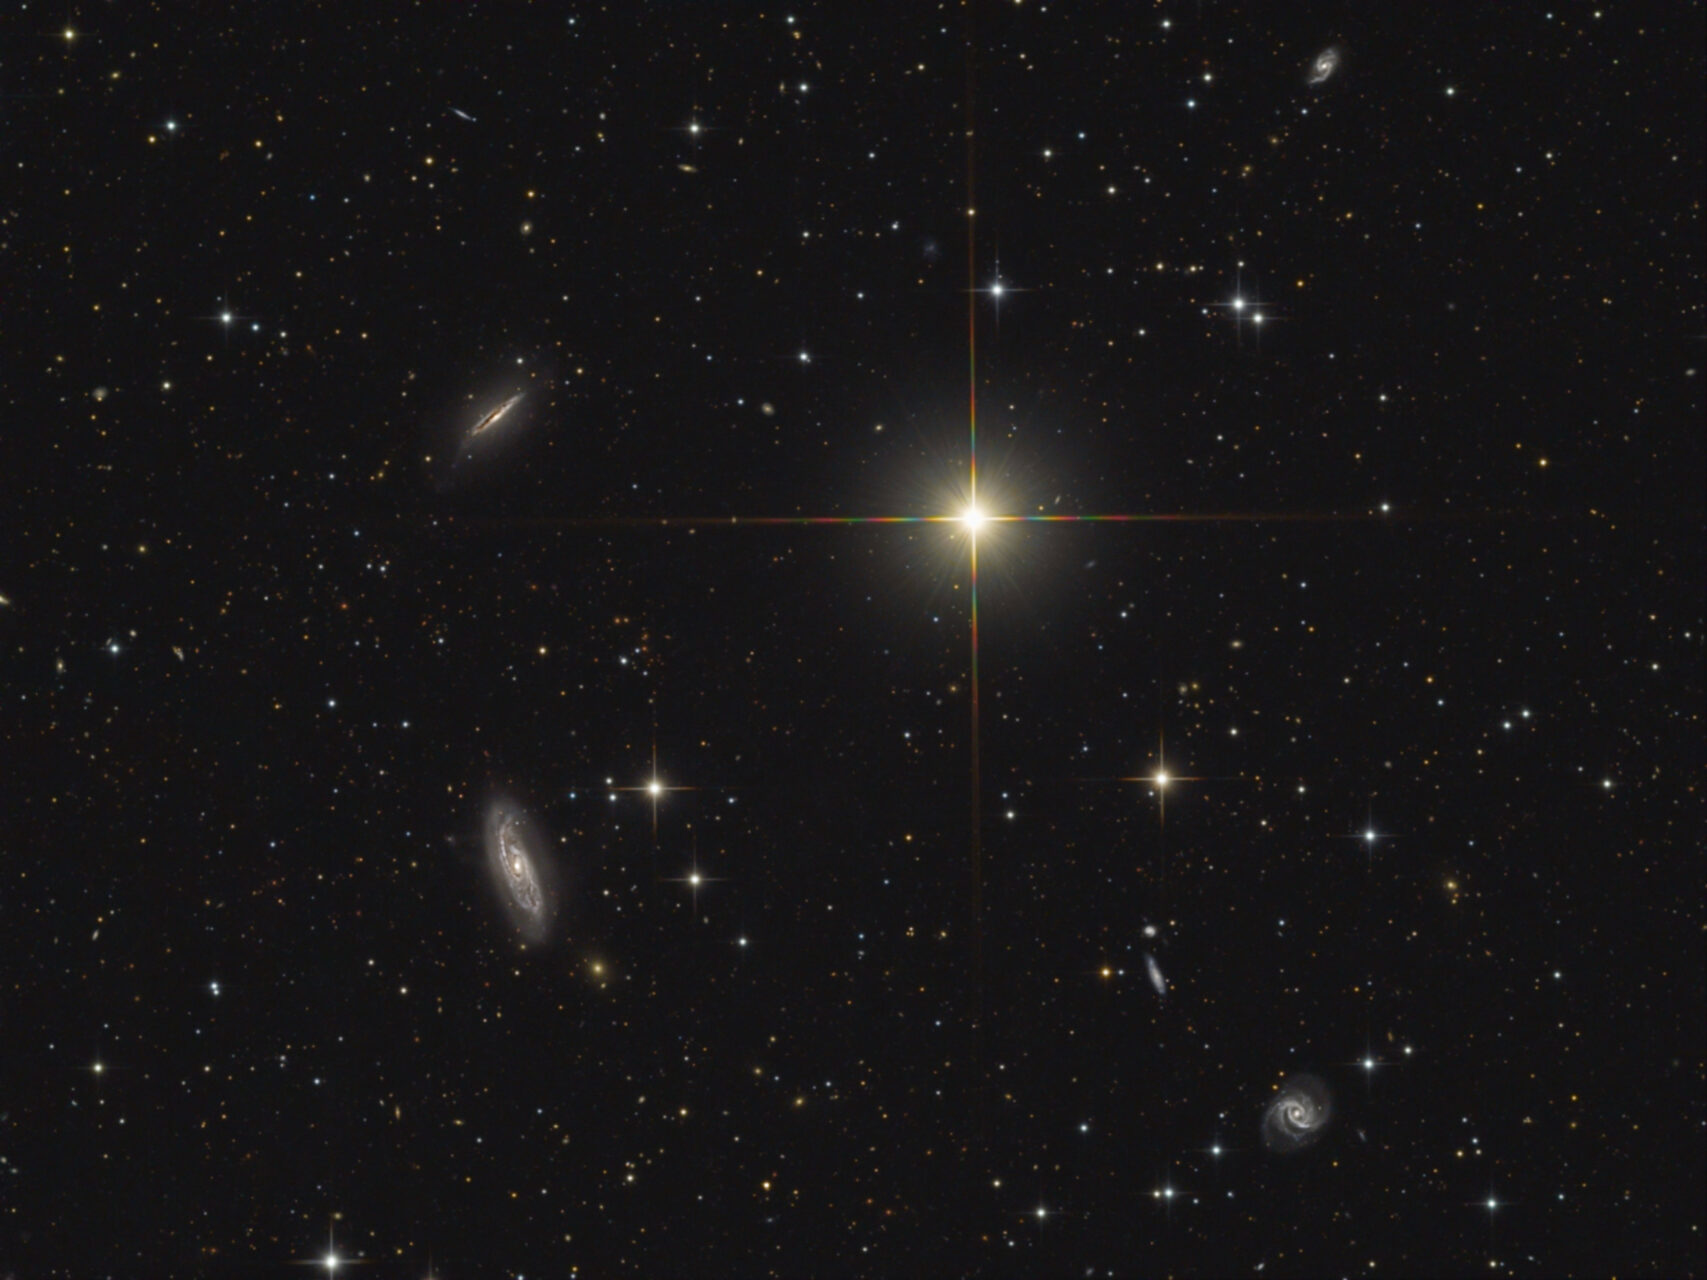 NGC 5899